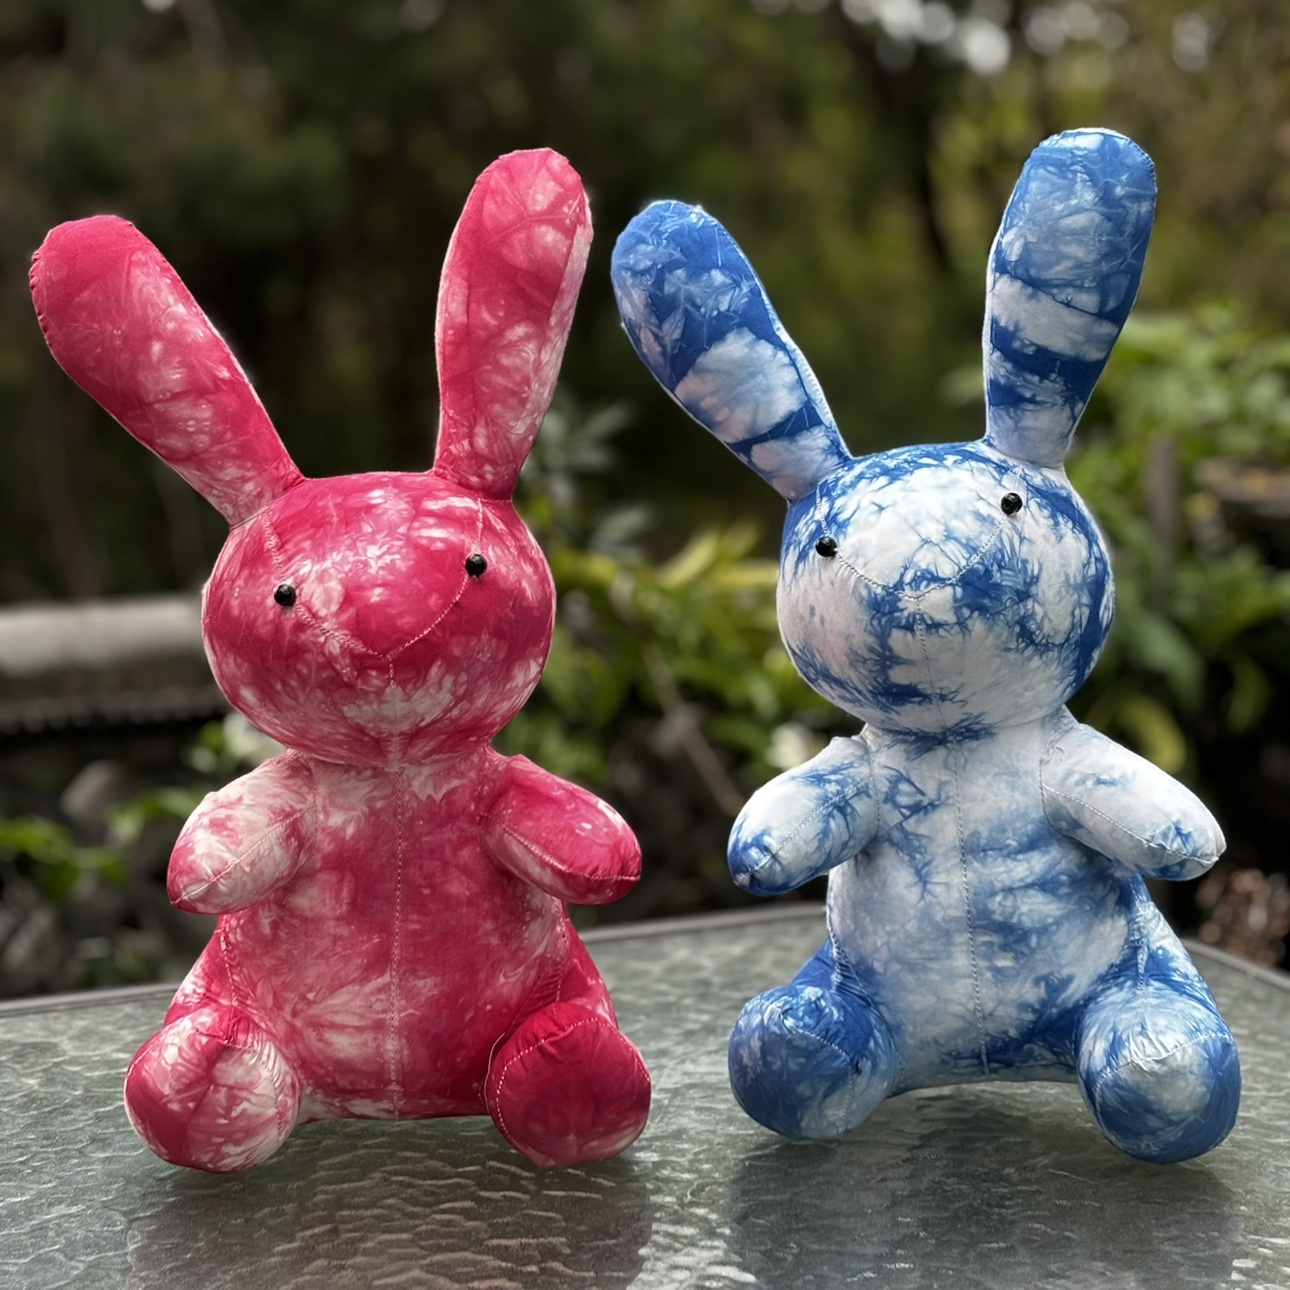 板蓝根植物染兔子摆件云南白族特色扎染布艺玩具兔